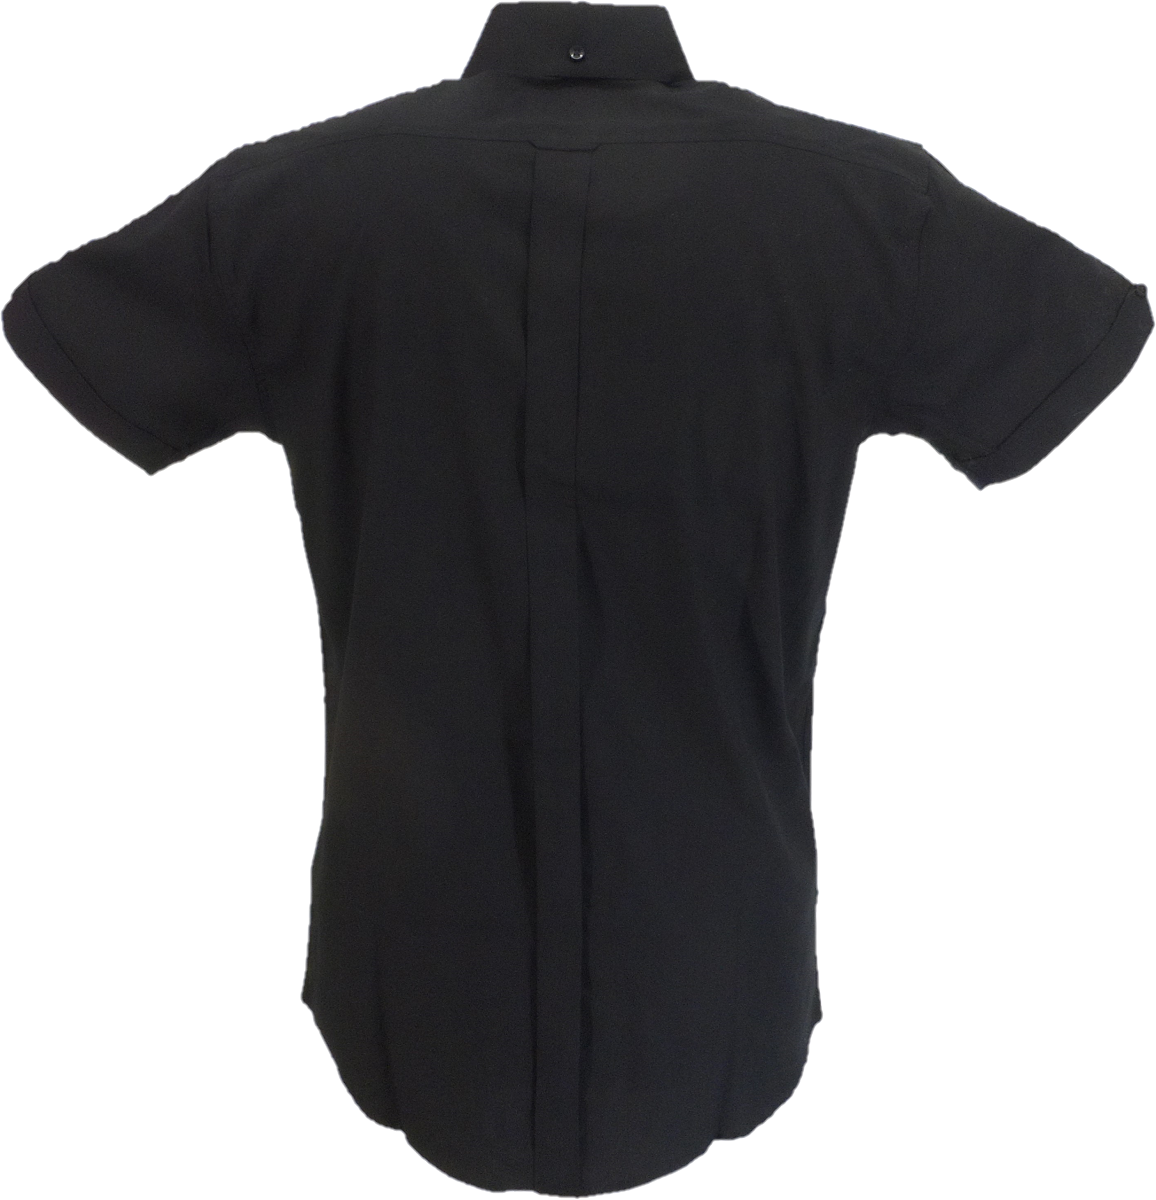 Camicie Relco nere in cotone oxford a maniche corte retrò mod button down